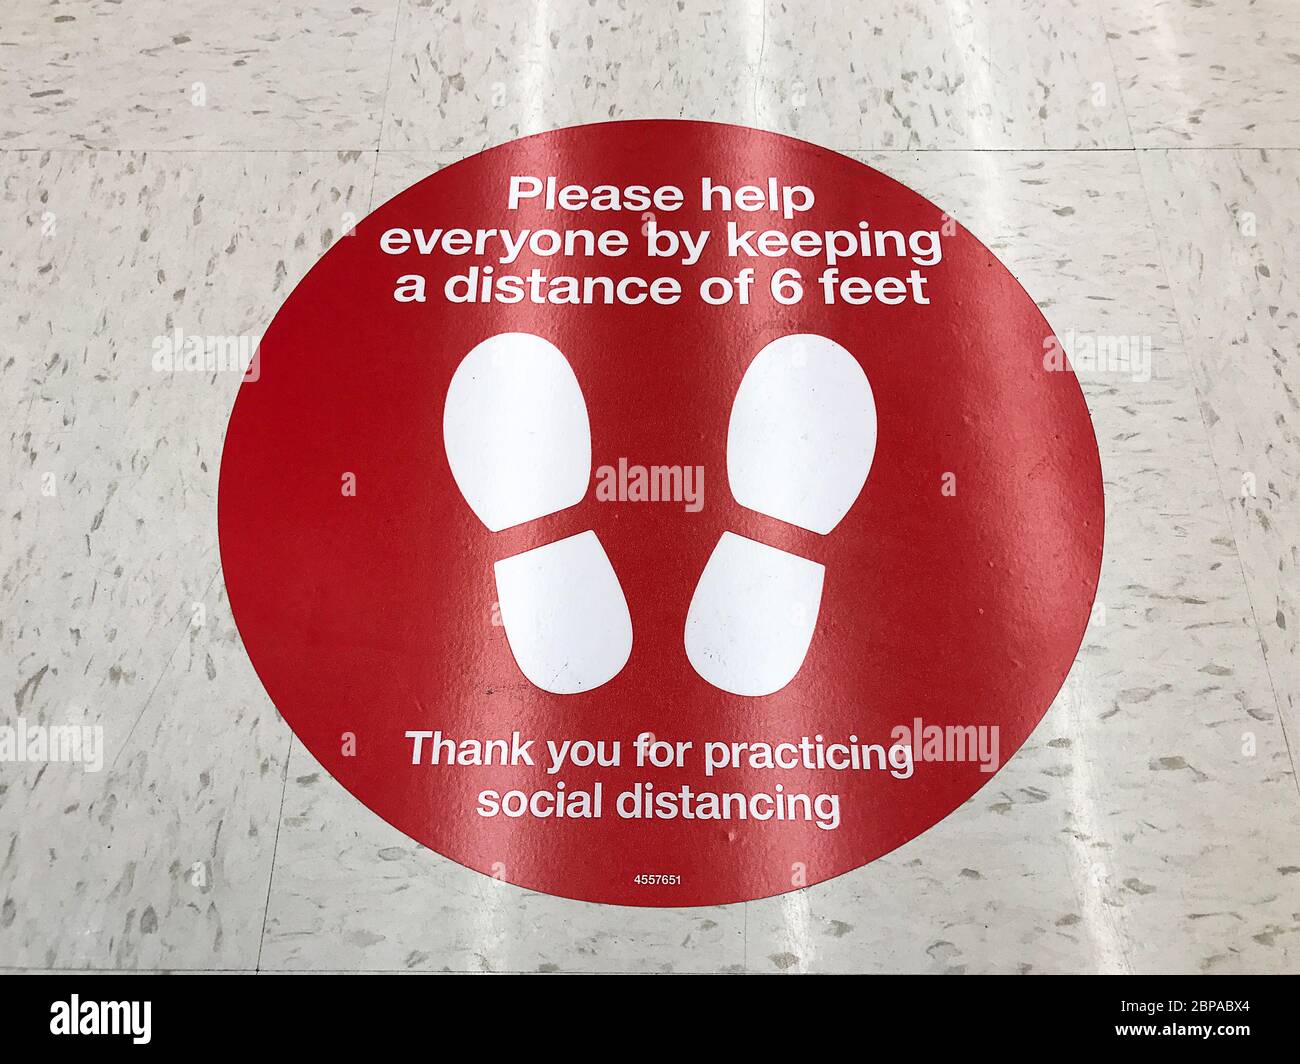 Cartello di divaricamento sociale sul pavimento del supermercato che chiede ai clienti di praticare una distanza di almeno 6 piedi per prevenire la diffusione del coronavirus Foto Stock